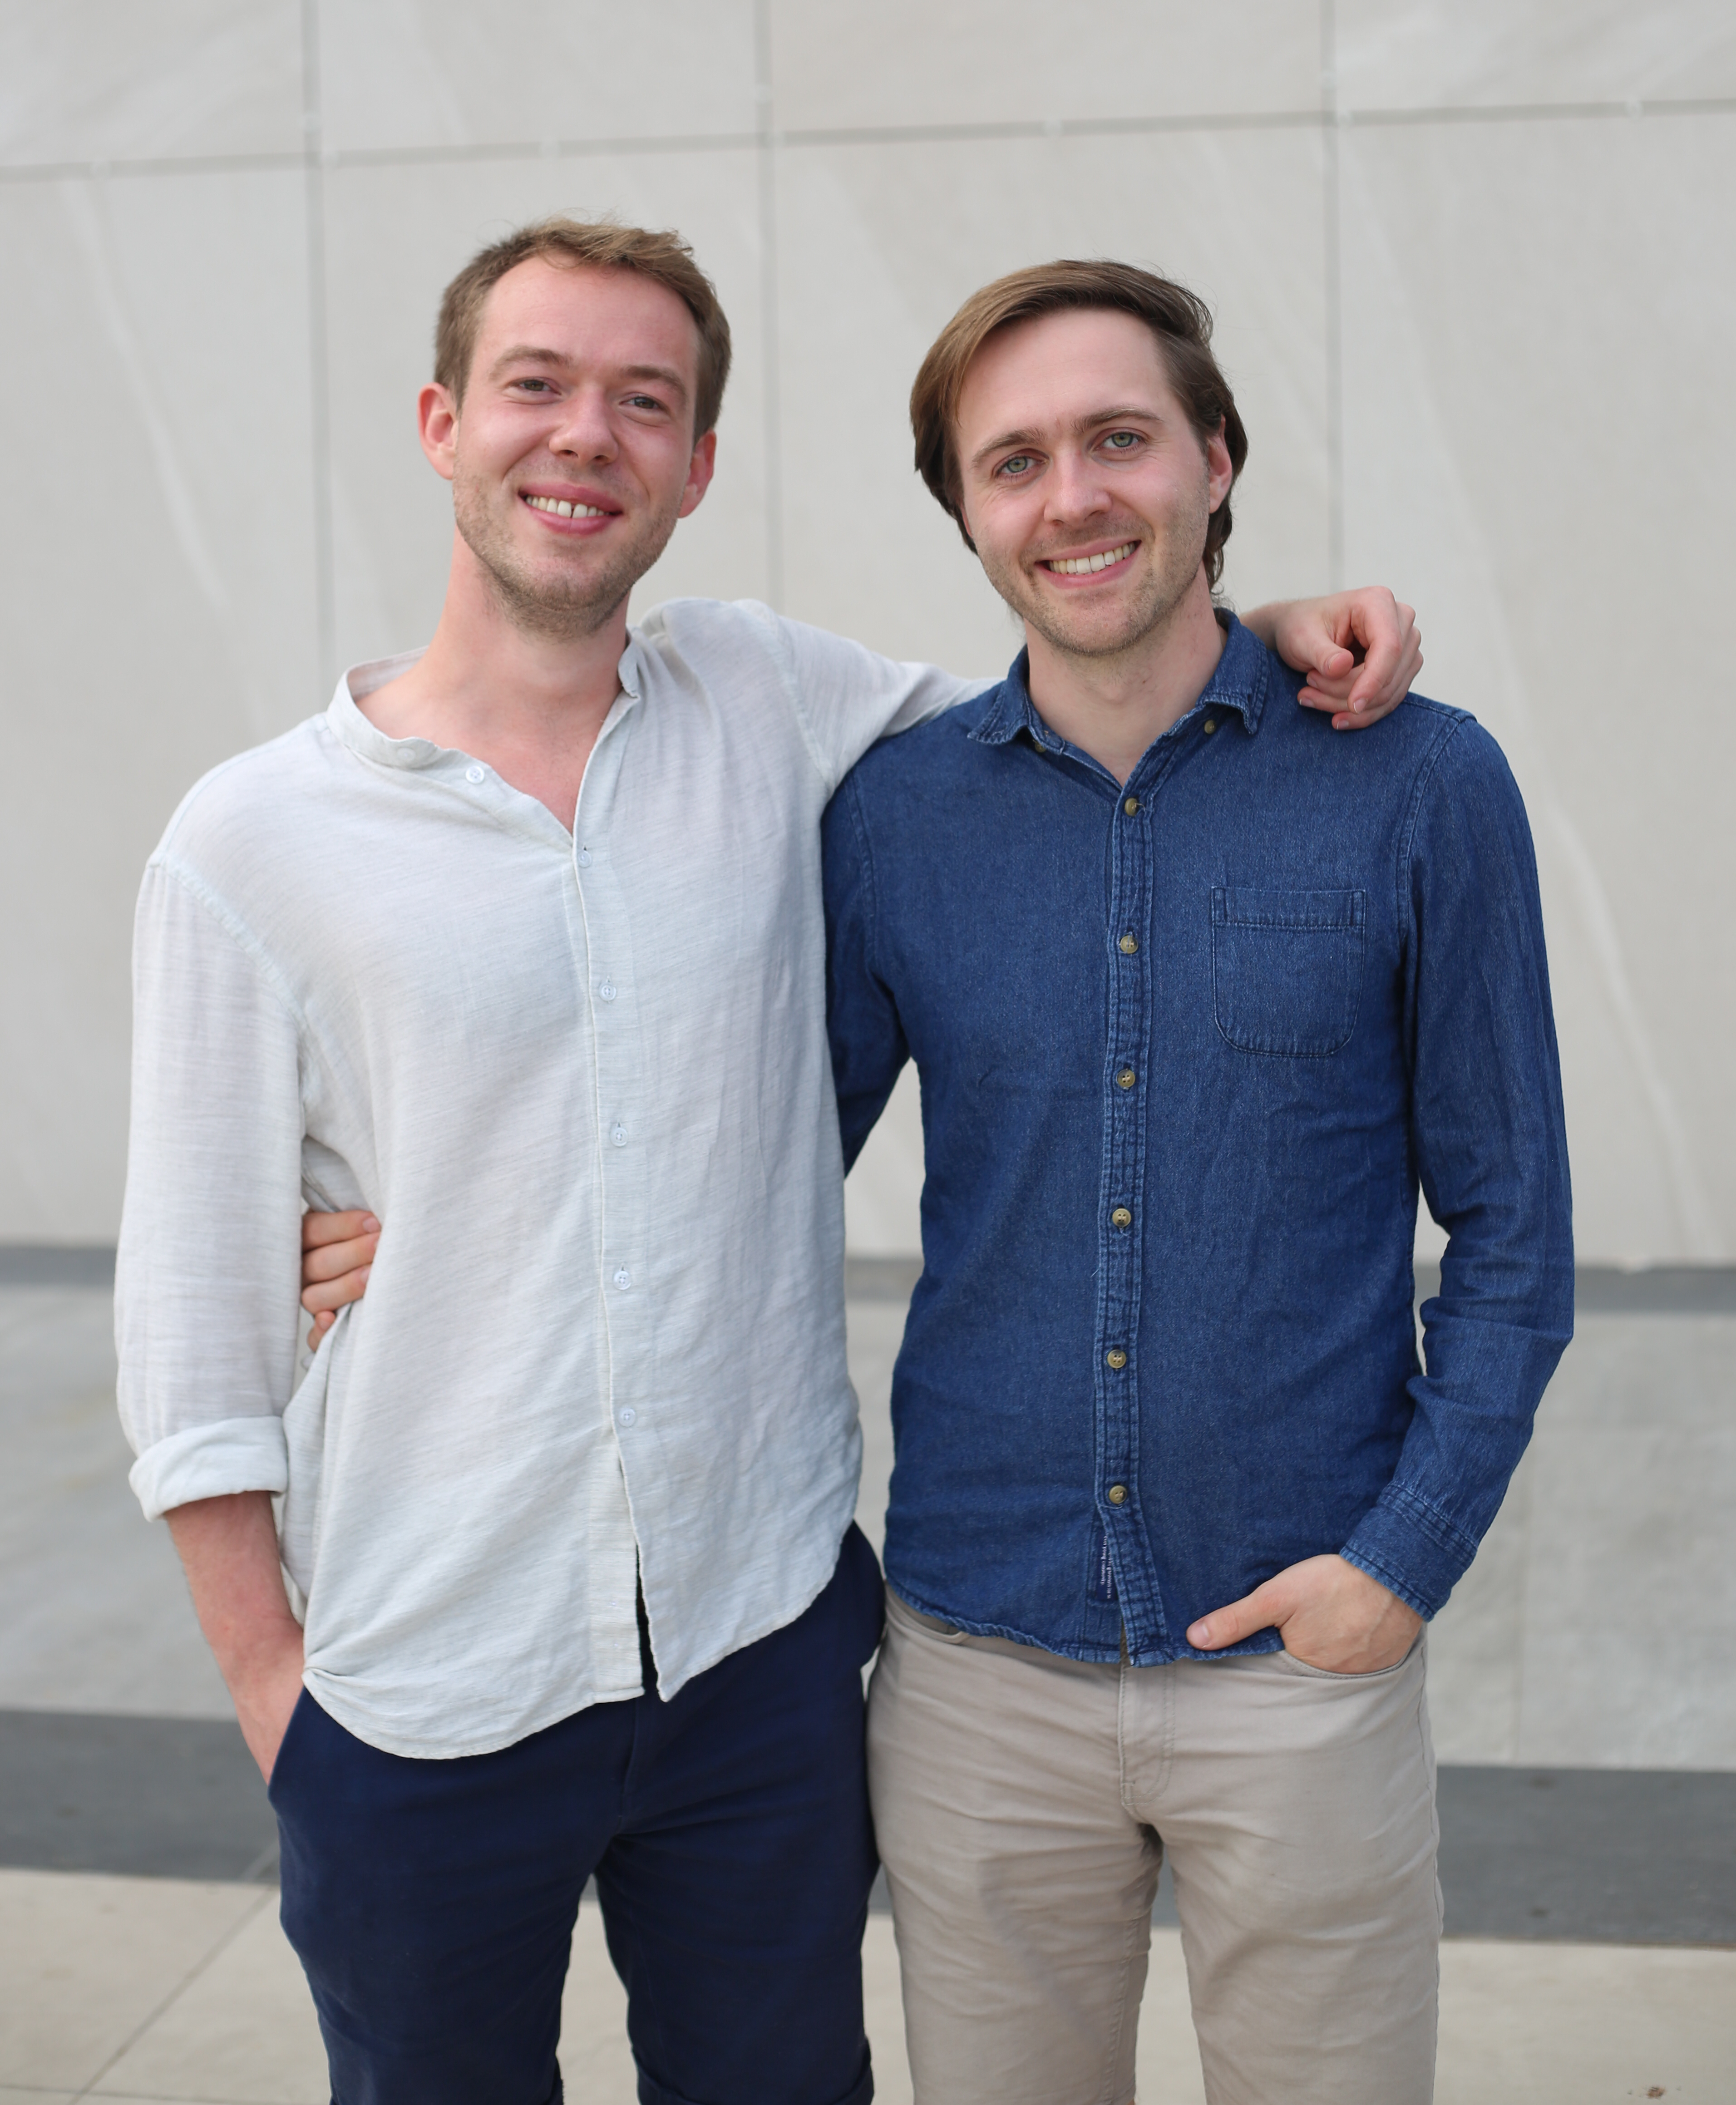 Die Gründer der Actimi GmbH, zwei junge Männer, stehen vor einem Gebäude.